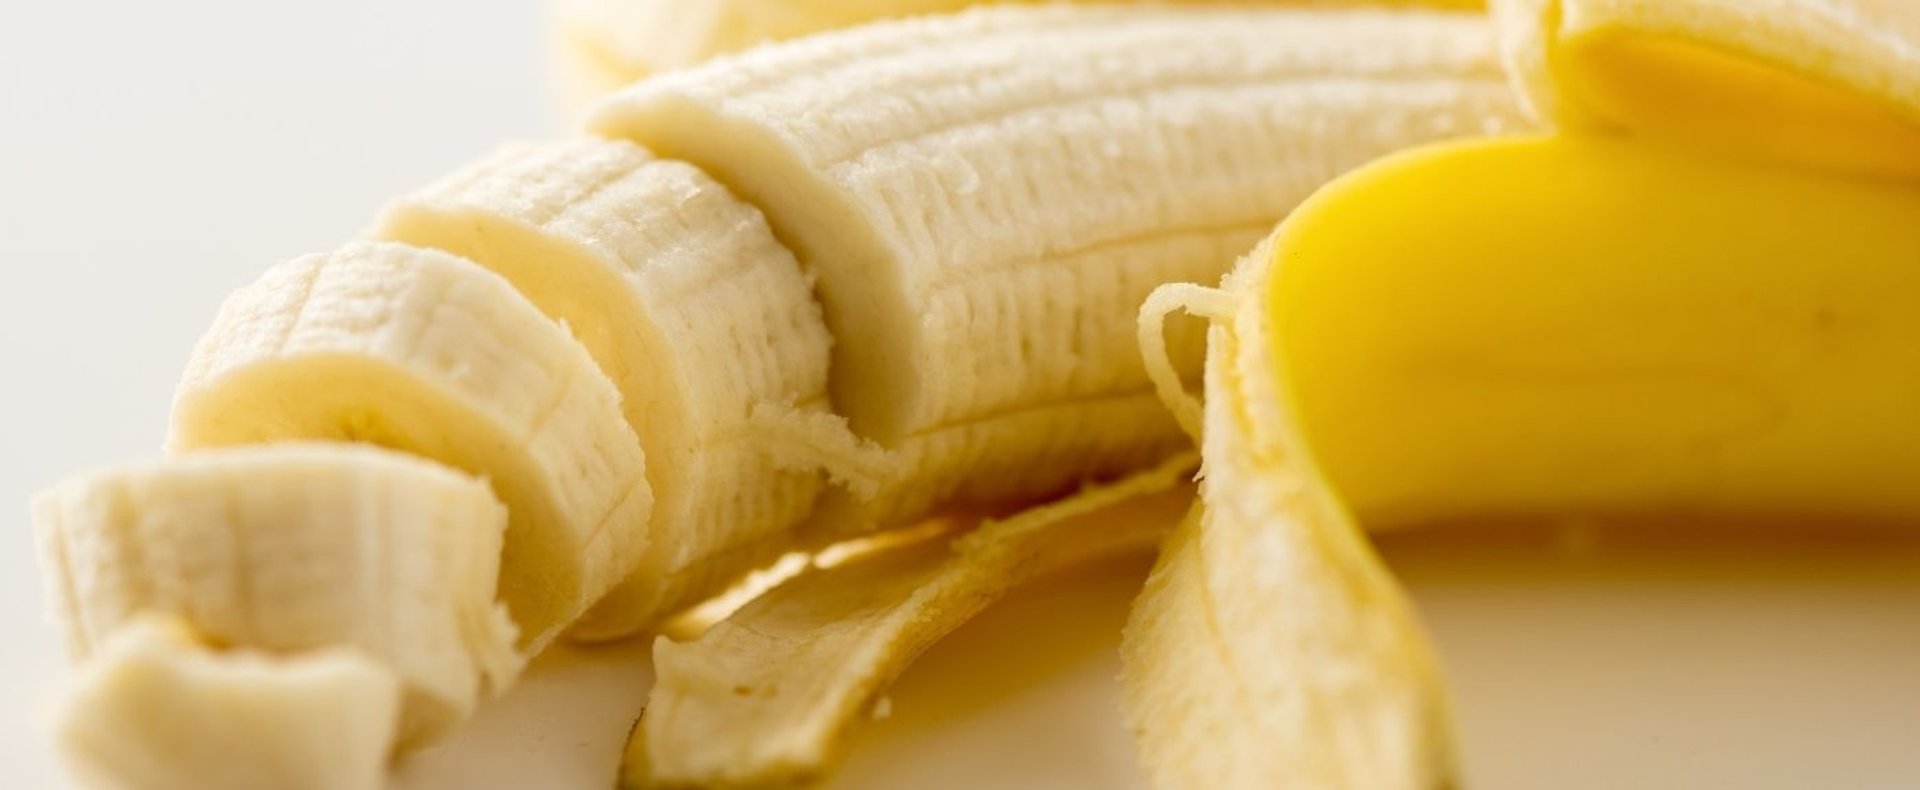 Banany mają mnóstwo właściwości